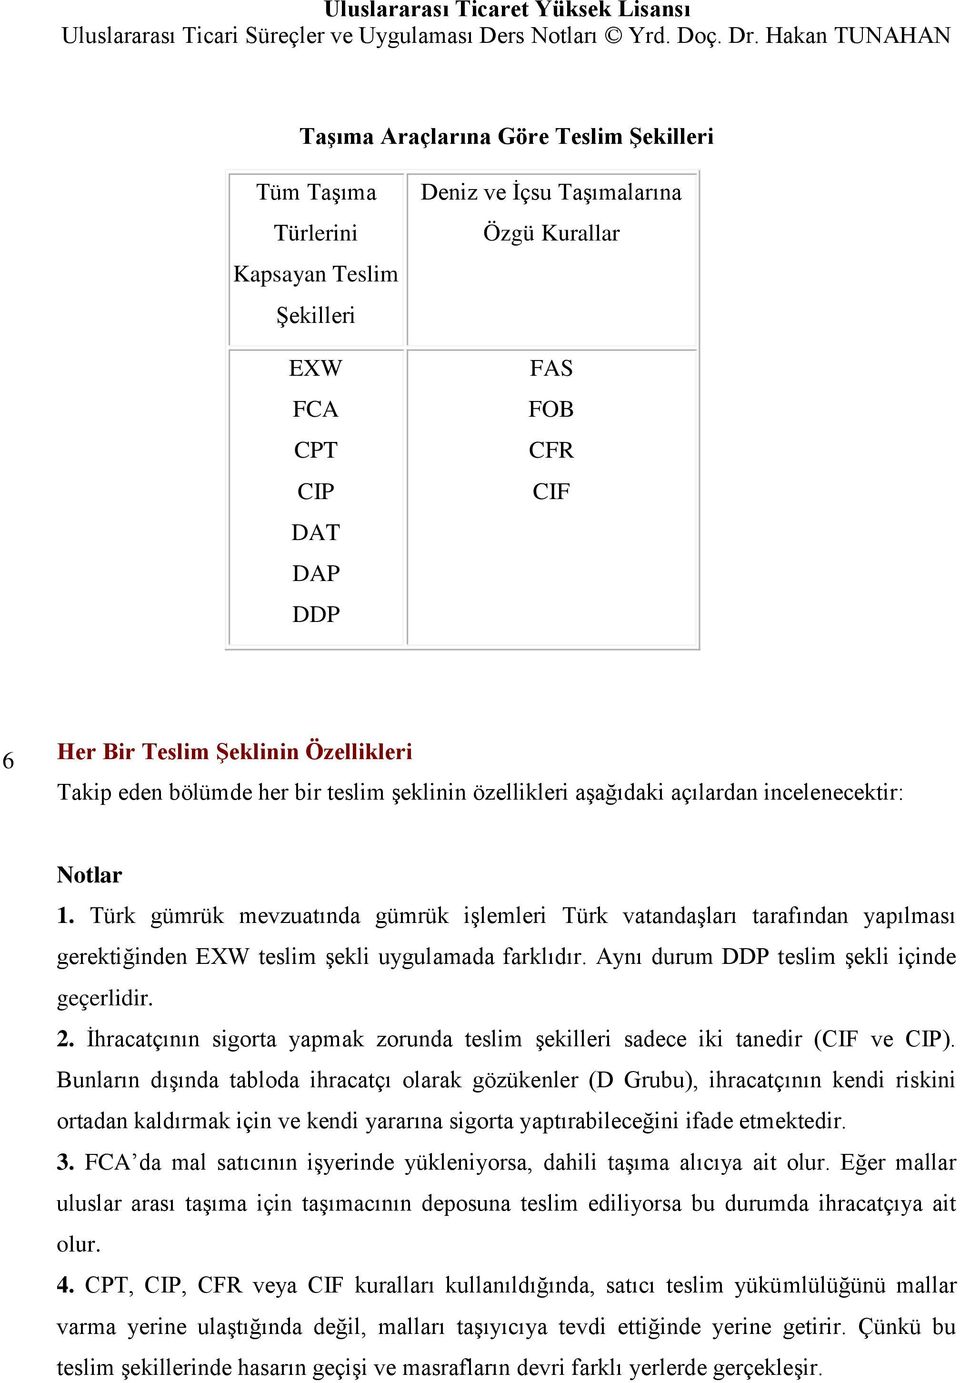 Türk gümrük mevzuatında gümrük işlemleri Türk vatandaşları tarafından yapılması gerektiğinden EXW teslim şekli uygulamada farklıdır. Aynı durum DDP teslim şekli içinde geçerlidir. 2.